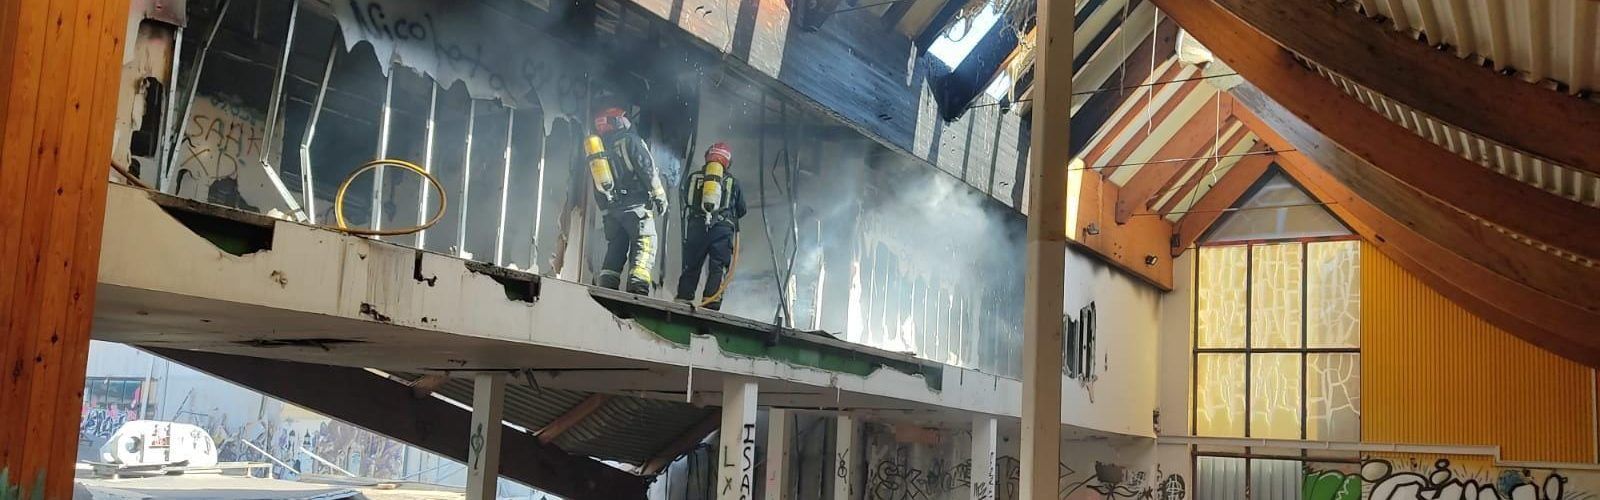 Fotos: incendio en un antiguo hipermercado de Vinaròs